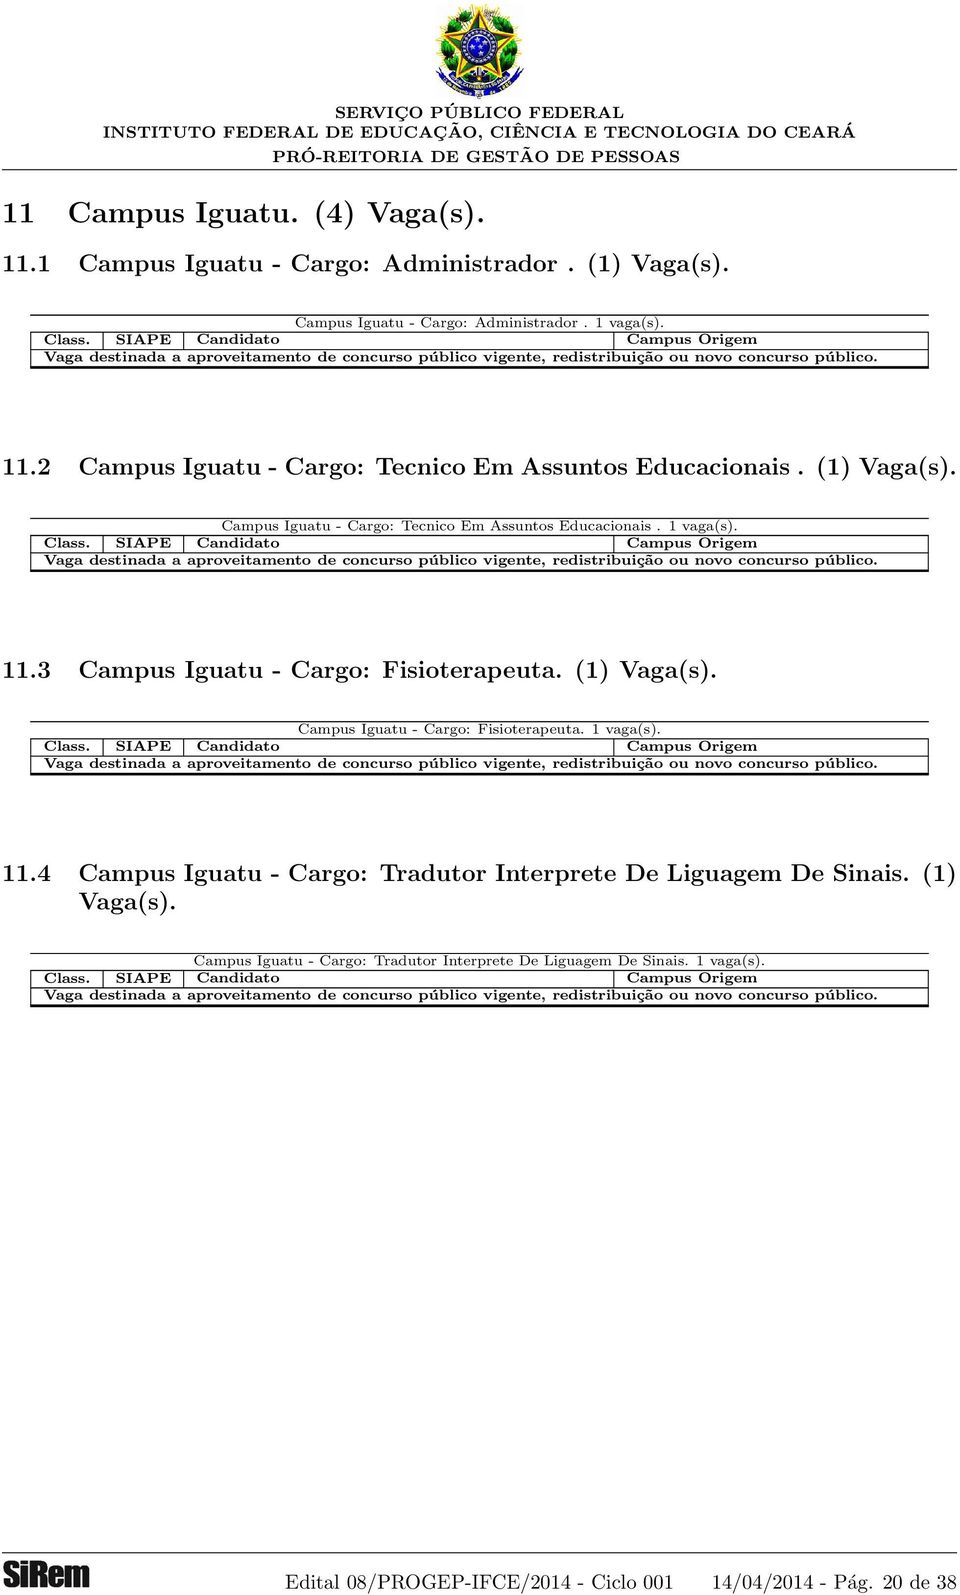 Campus Iguatu - Cargo: Fisioterapeuta. 1 vaga(s). 11.4 Campus Iguatu - Cargo: Tradutor Interprete De Liguagem De Sinais. (1) Vaga(s).